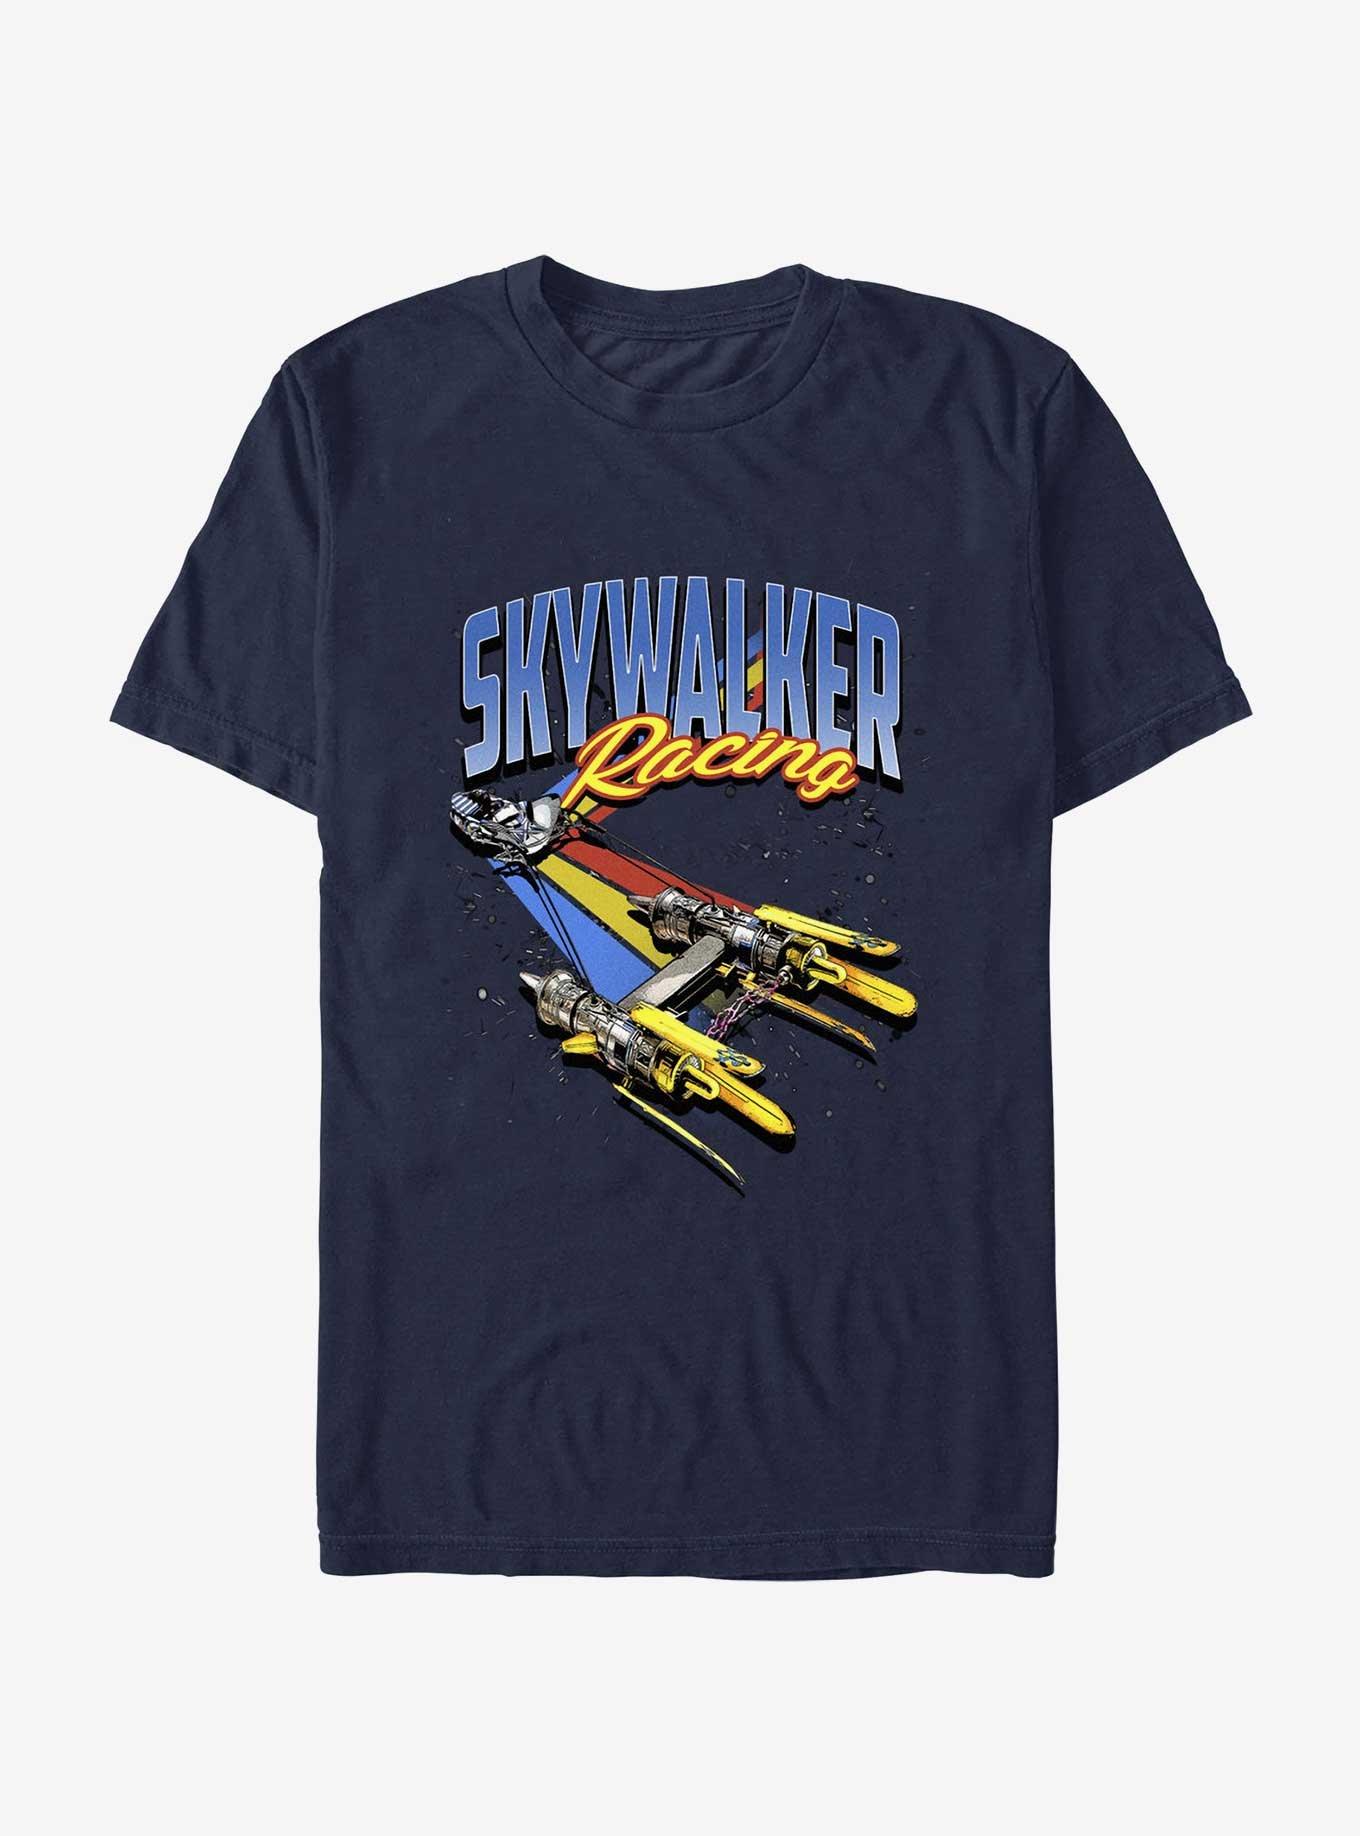 Star Wars Skywalker Podracing T-Shirt, NAVY, hi-res